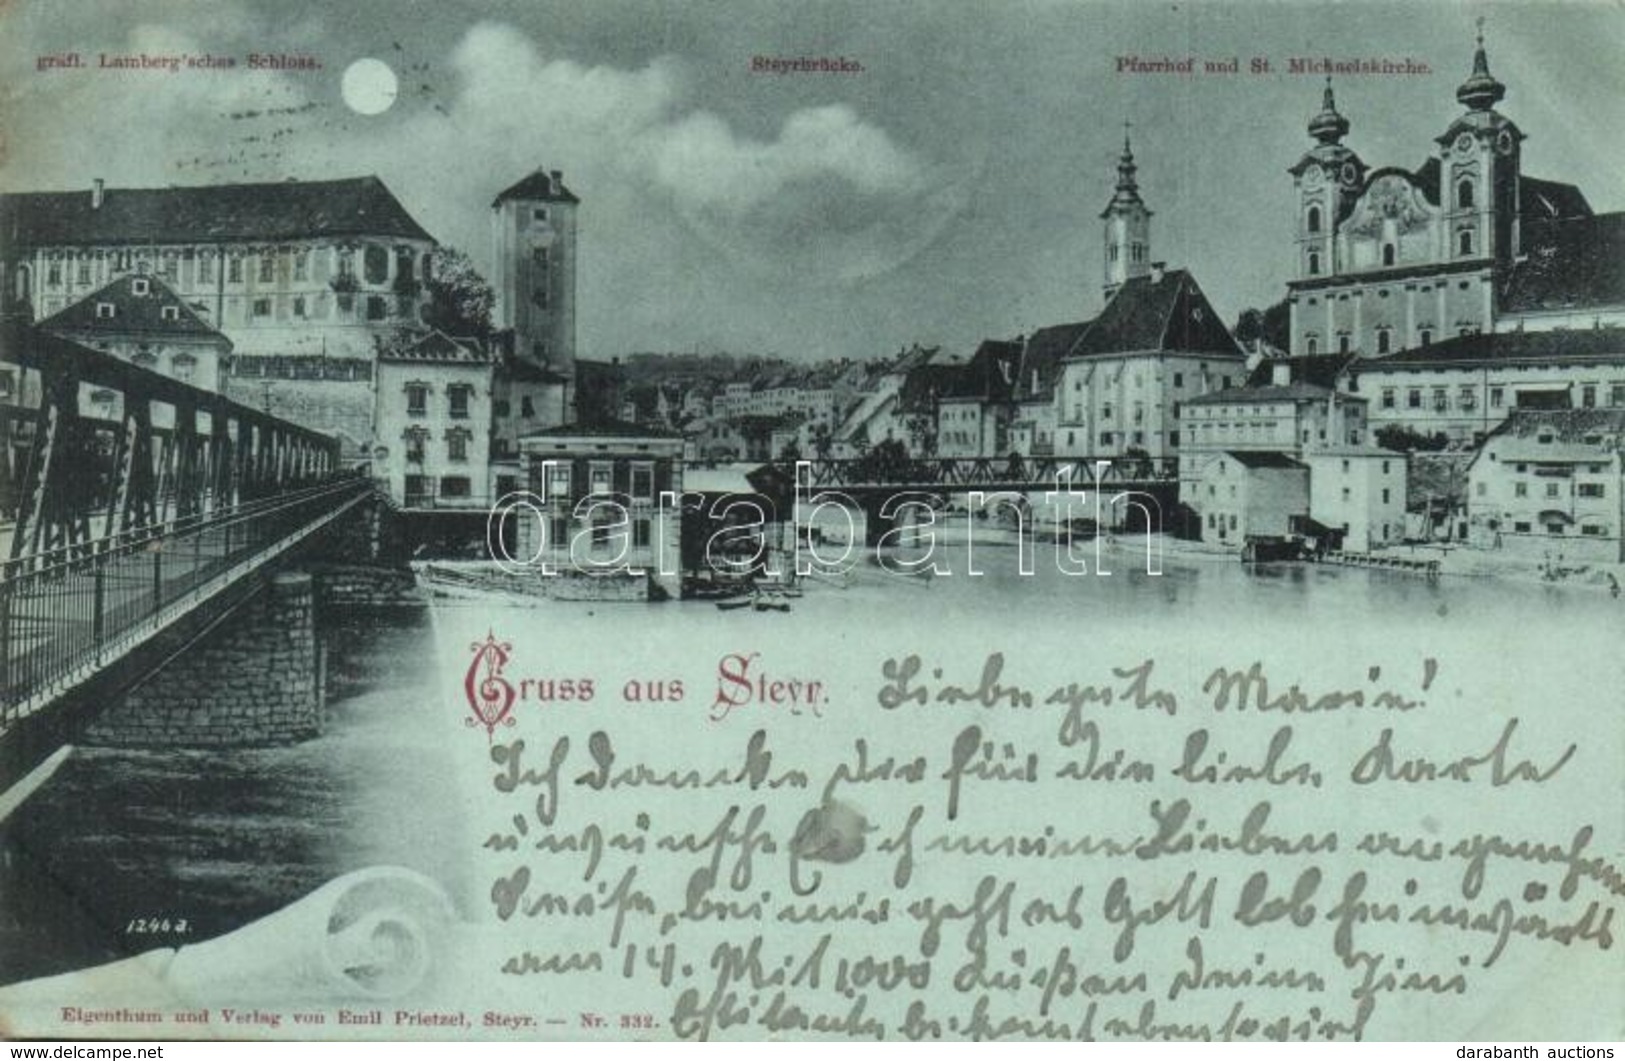 T2 1899 Steyr, Steyrbrücke, Pfarrhof Und St. Michaelskirche / Bridge, Church. Night - Unclassified